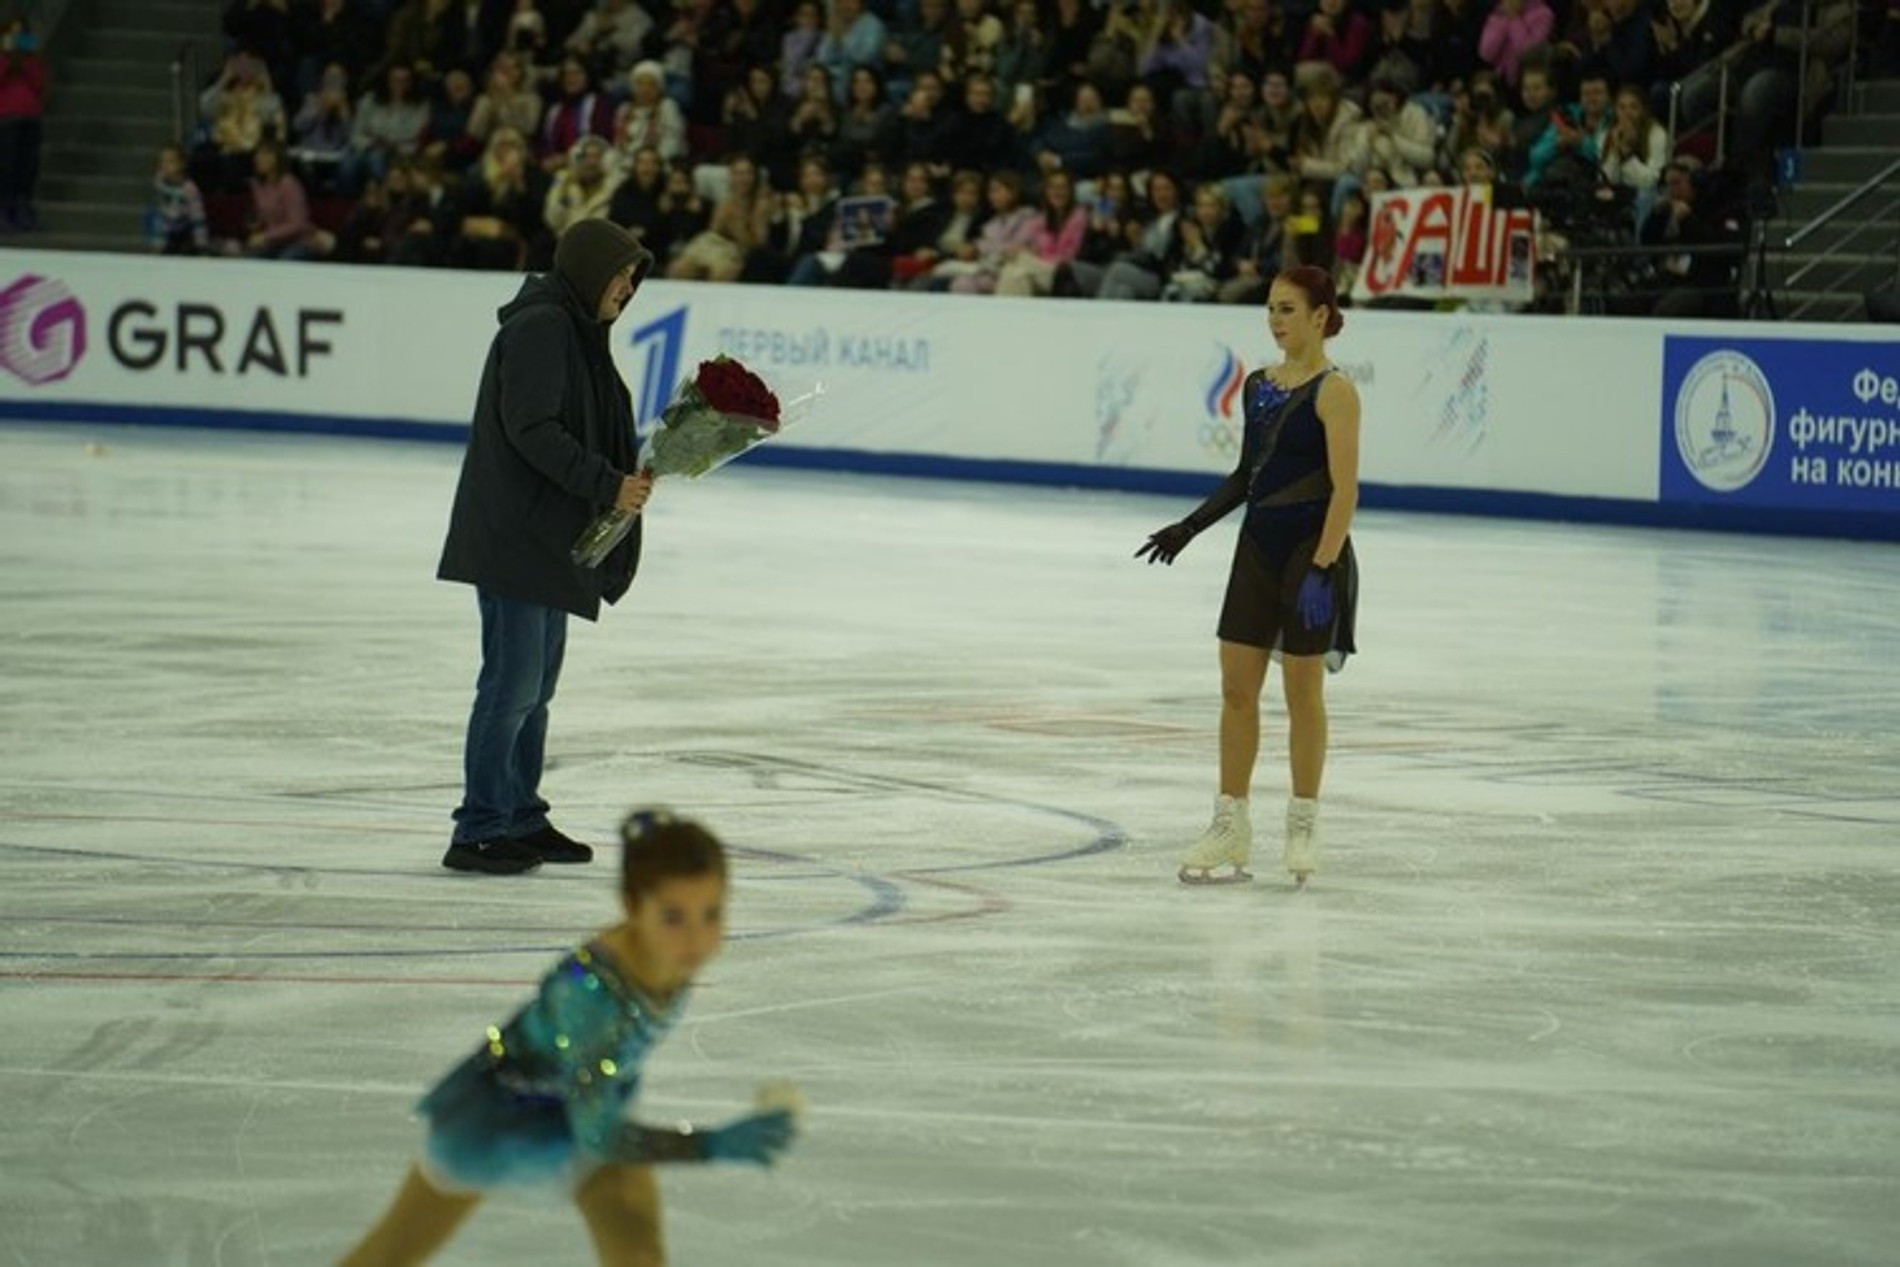 Фанат Саши Трудовой выбежал на лед, чтобы подарить ей цветы
Фото: KP